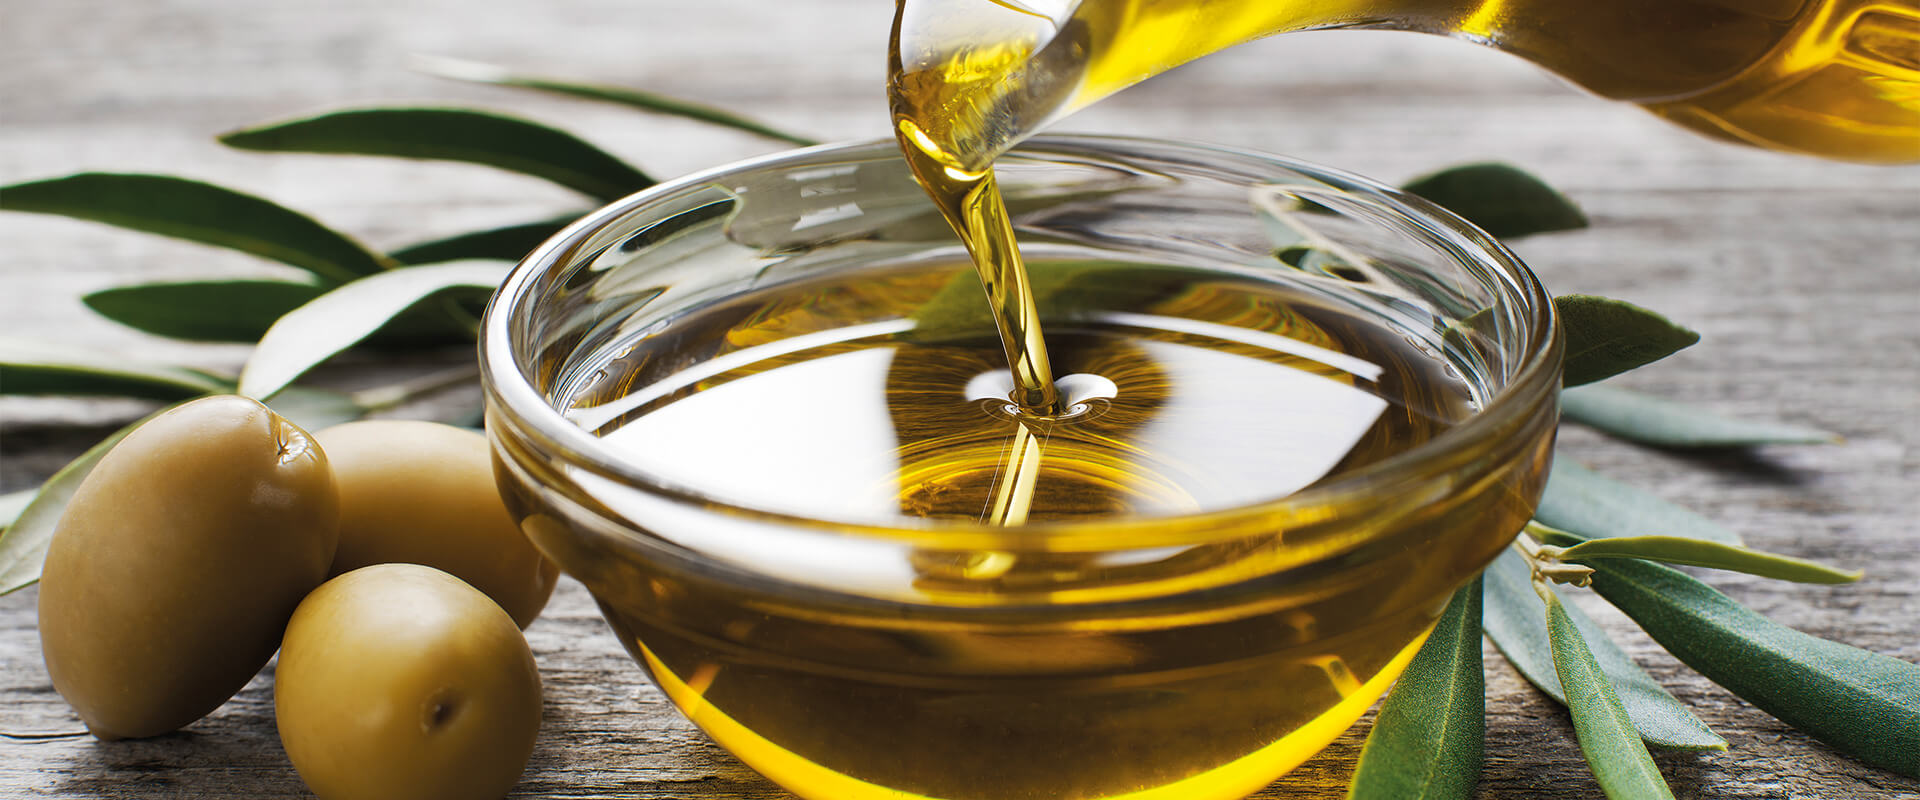 Olio di oliva piccante: EVO – Fratelli Carli